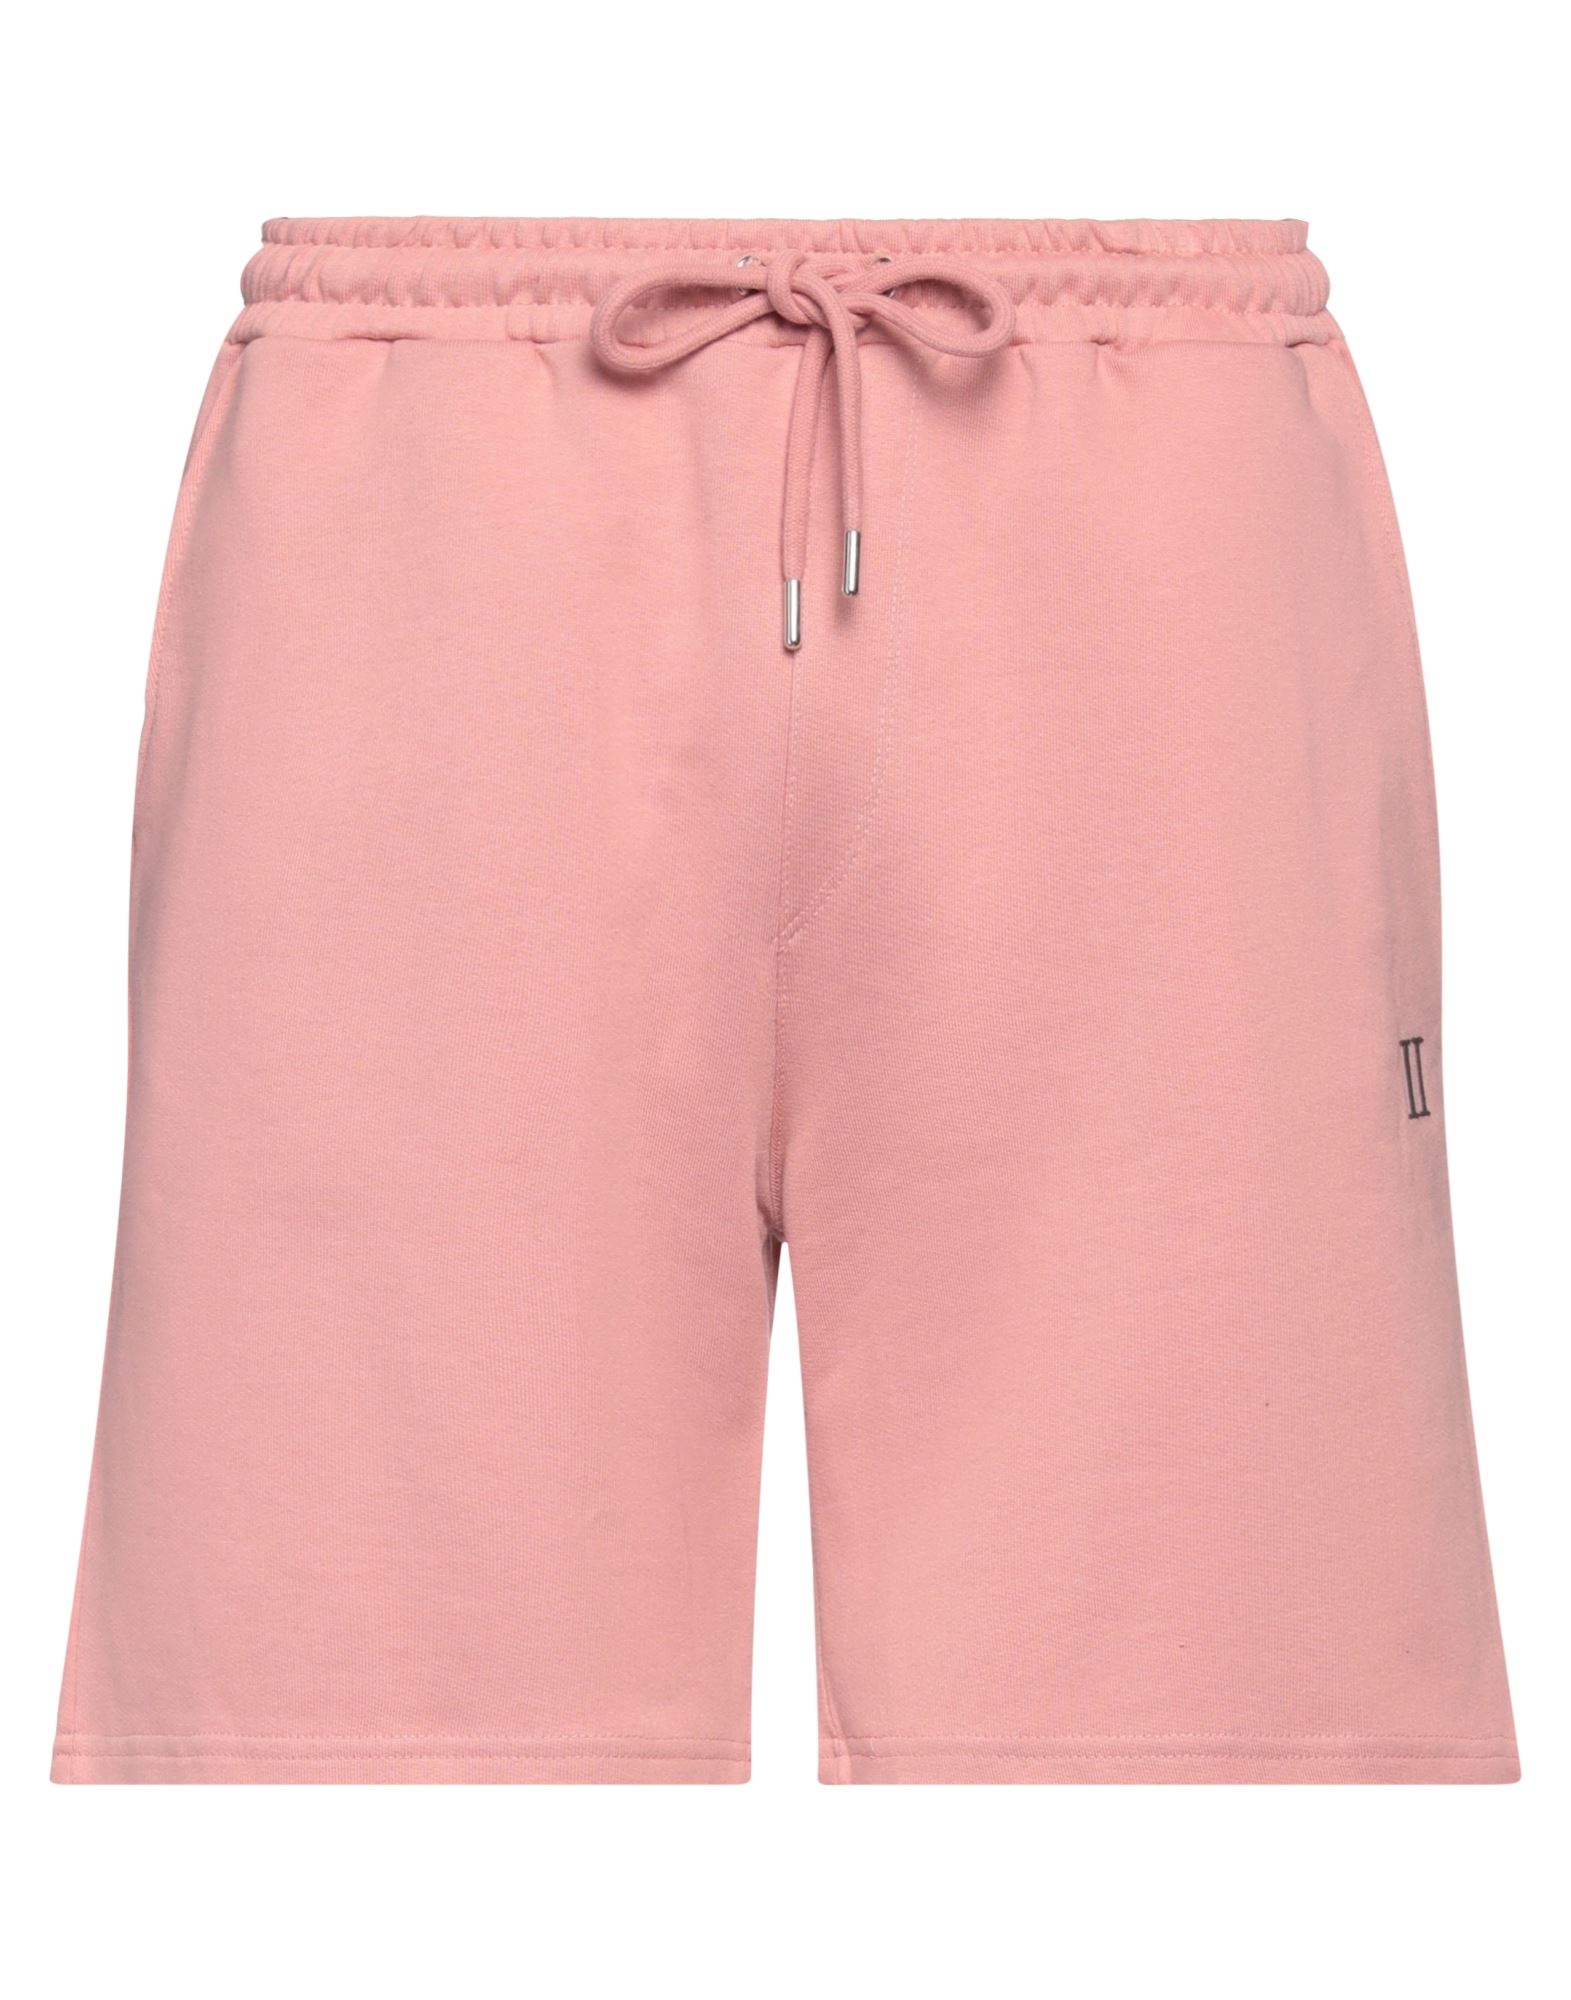 Les Deux Man Shorts & Bermuda Shorts Pastel Pink Size Xl Cotton